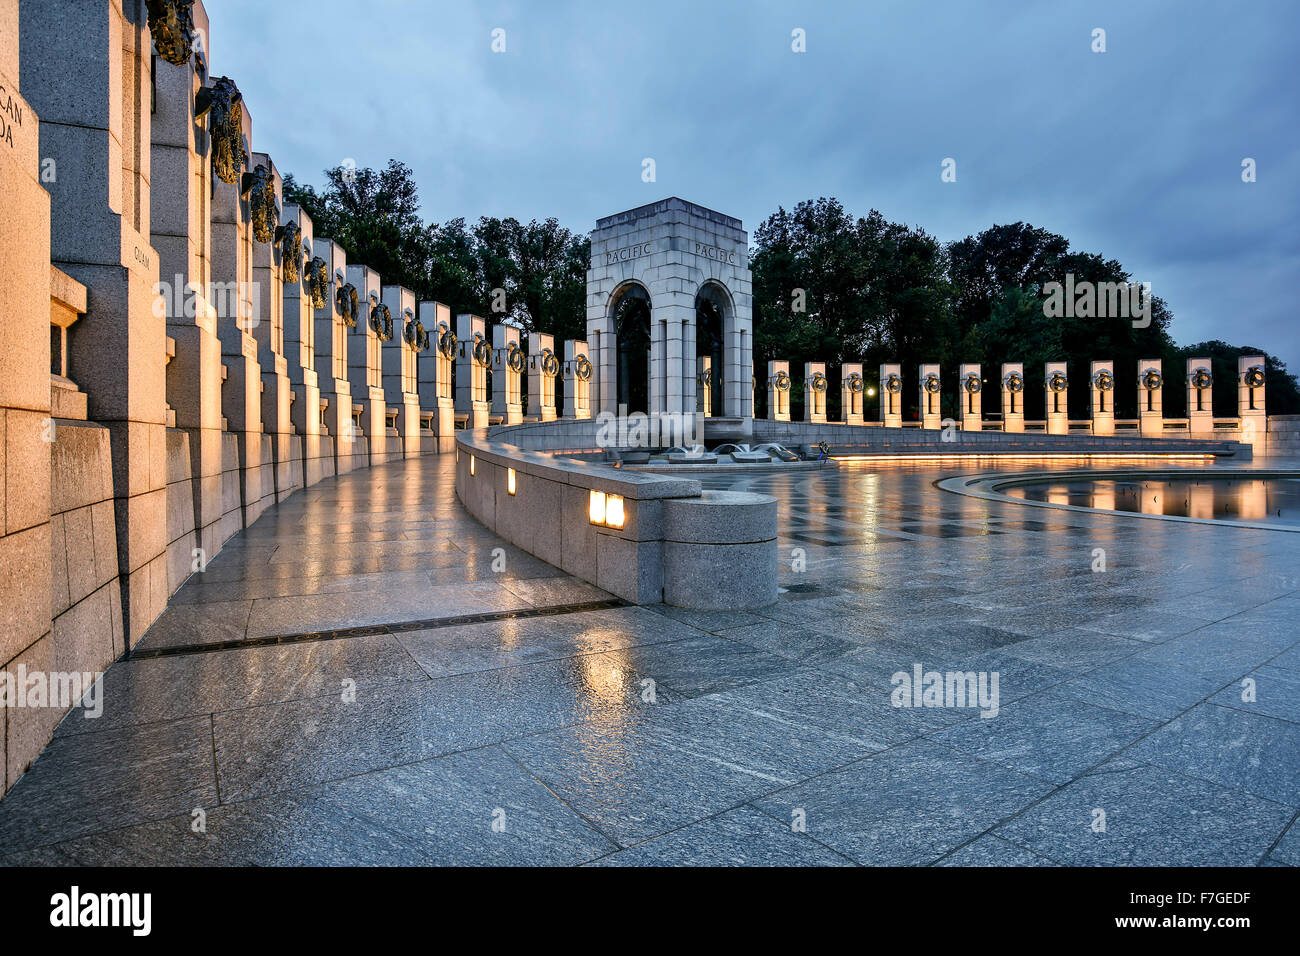 El Memorial de la Segunda Guerra Mundial, Washington, Distrito de Columbia, EE.UU. Foto de stock